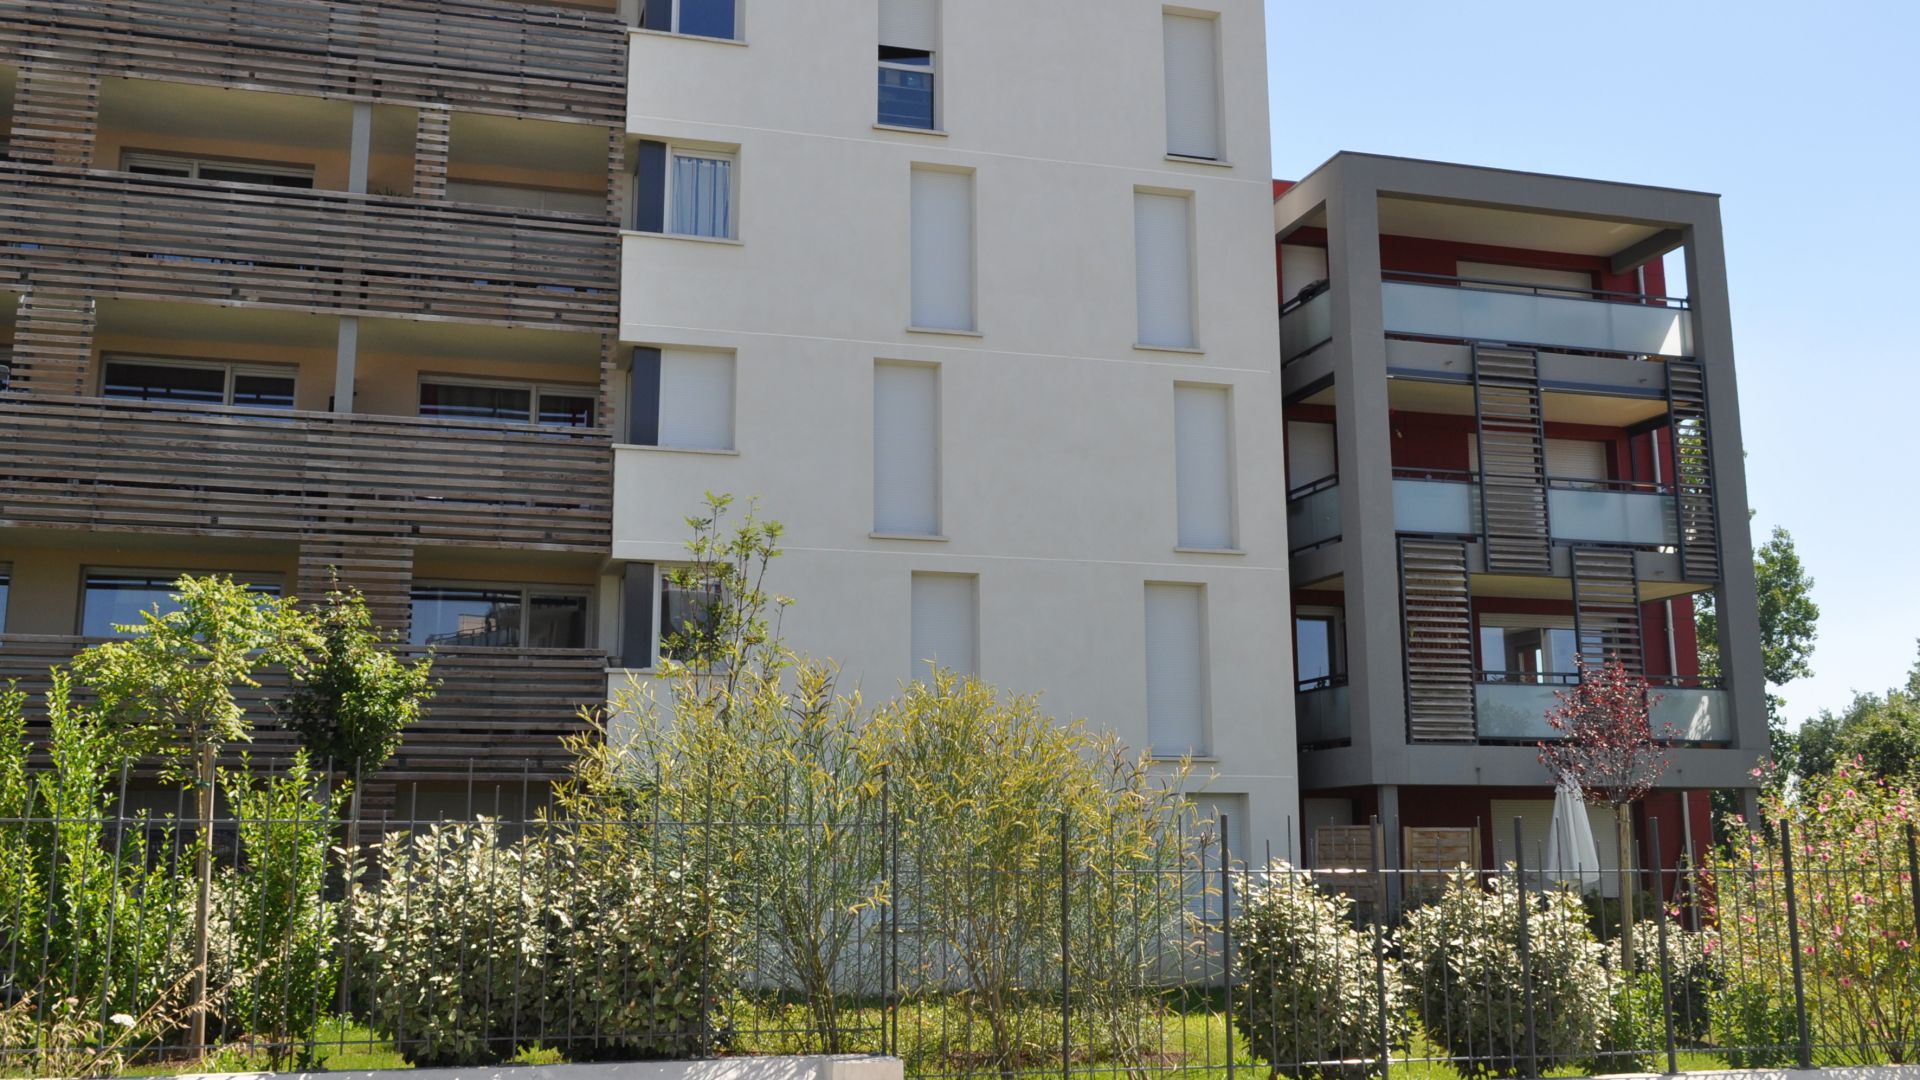 Greencity Immobilier - Le Castel - 31770 - location appartements et villas